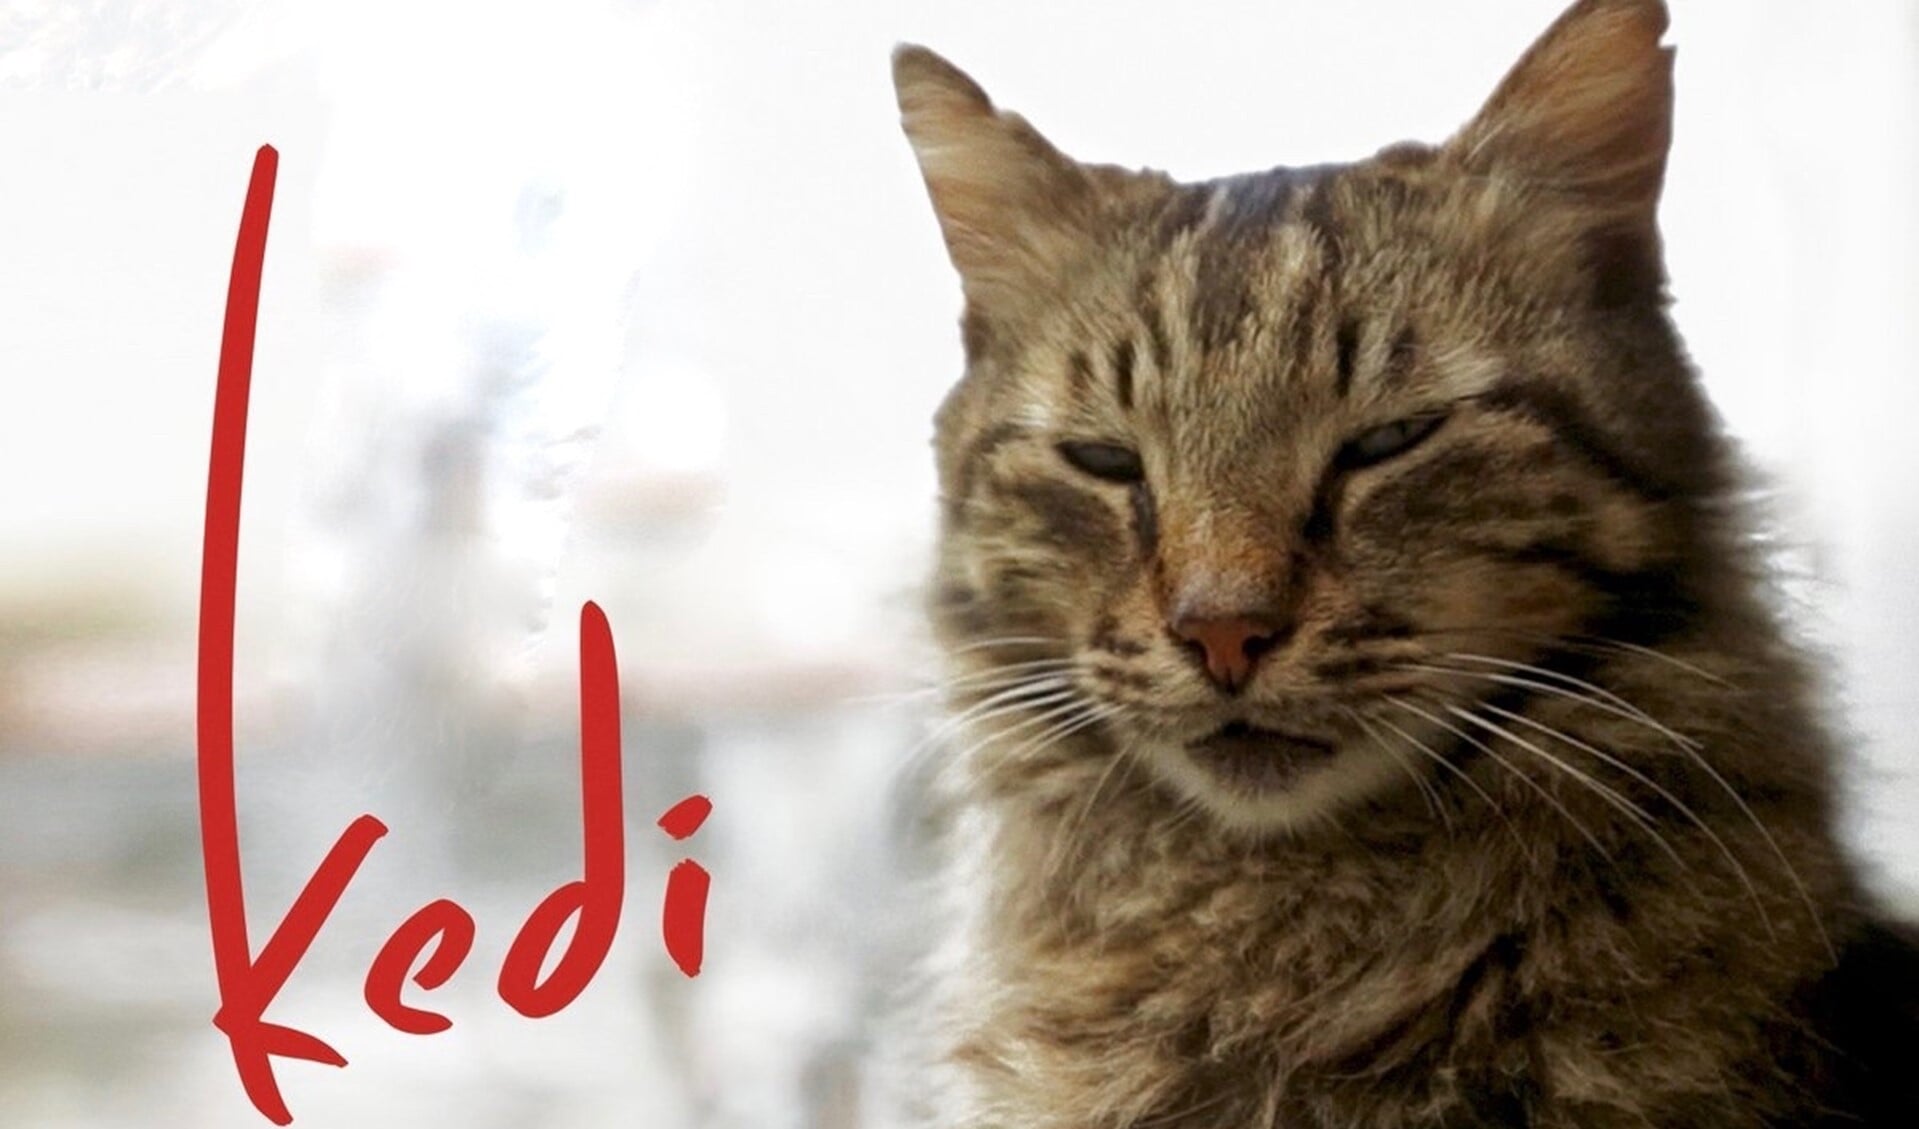 Aan de hand van zeven katten voert de film/documentaire Kedi de kijker door Istanbul. 